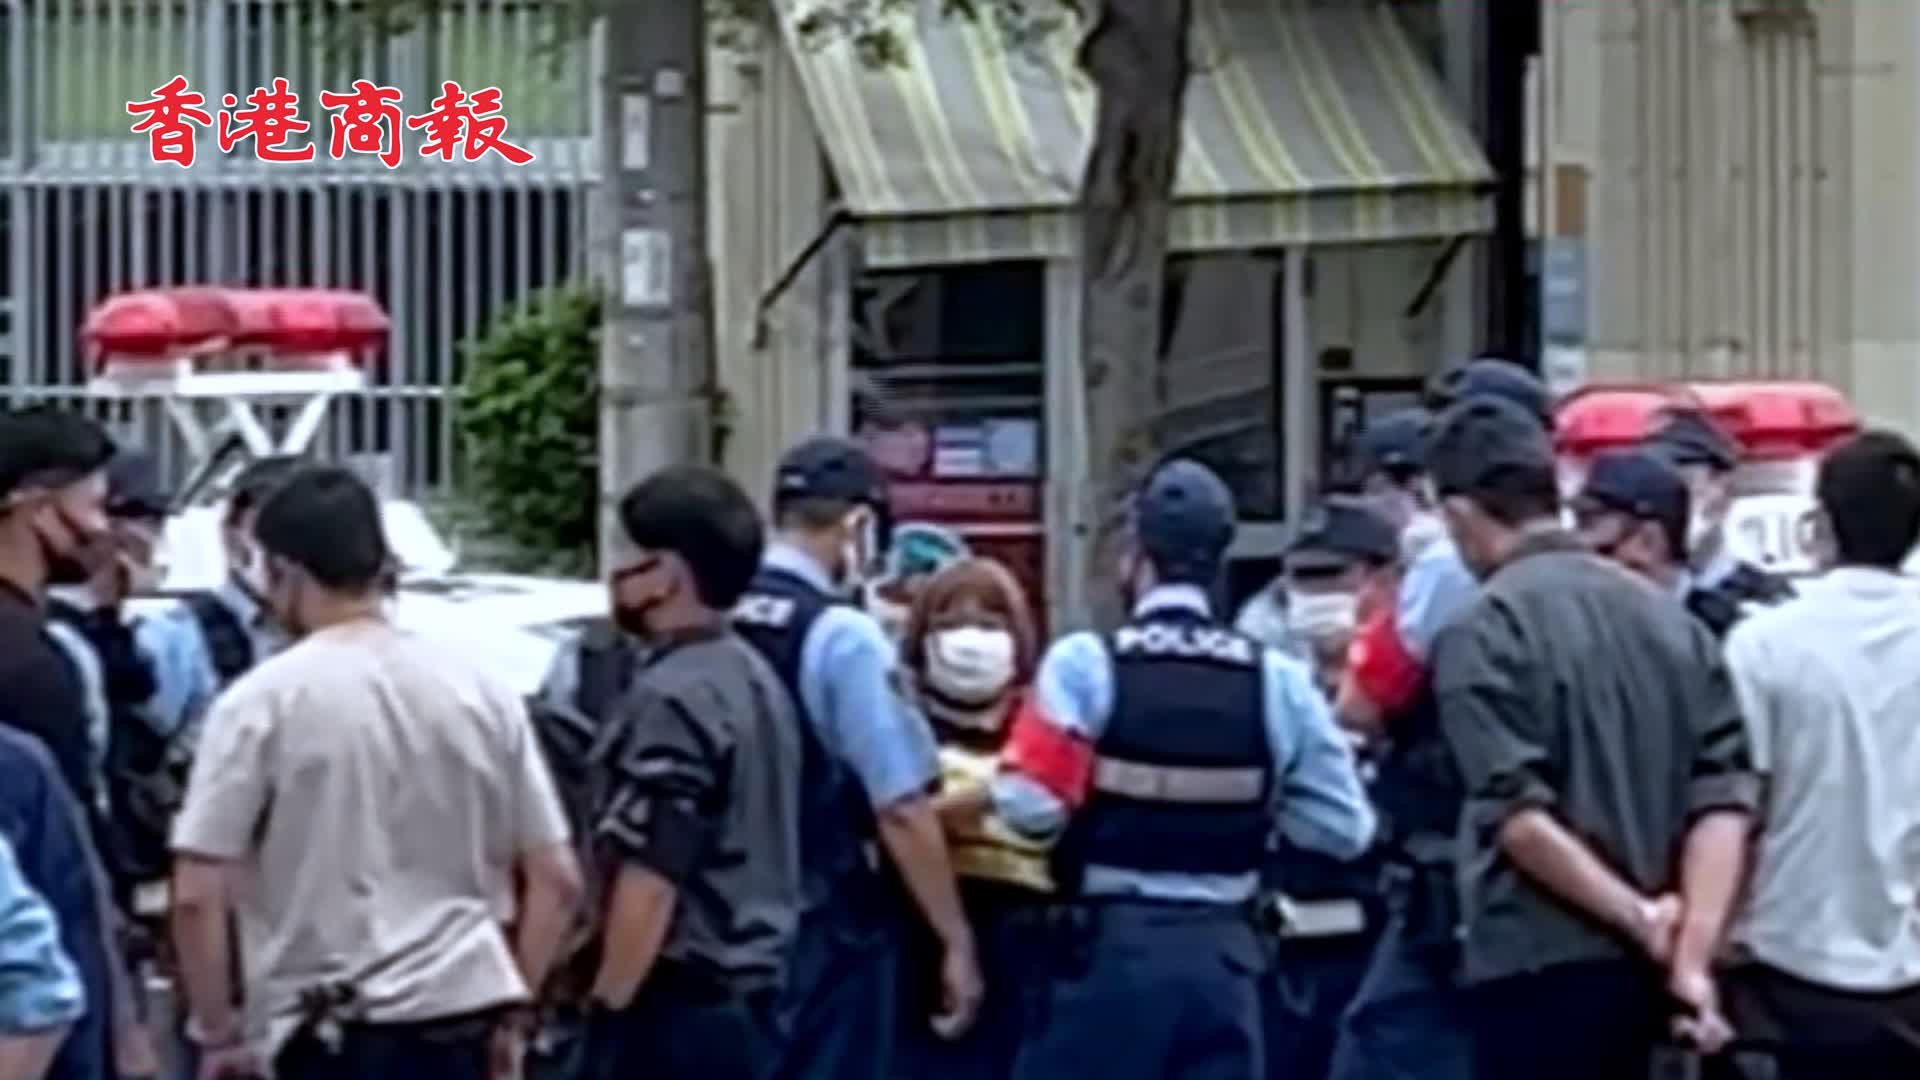 有片 | 女子攜帶疑似爆炸物靠近美駐沖繩總領館 警方指控其涉嫌妨礙公務